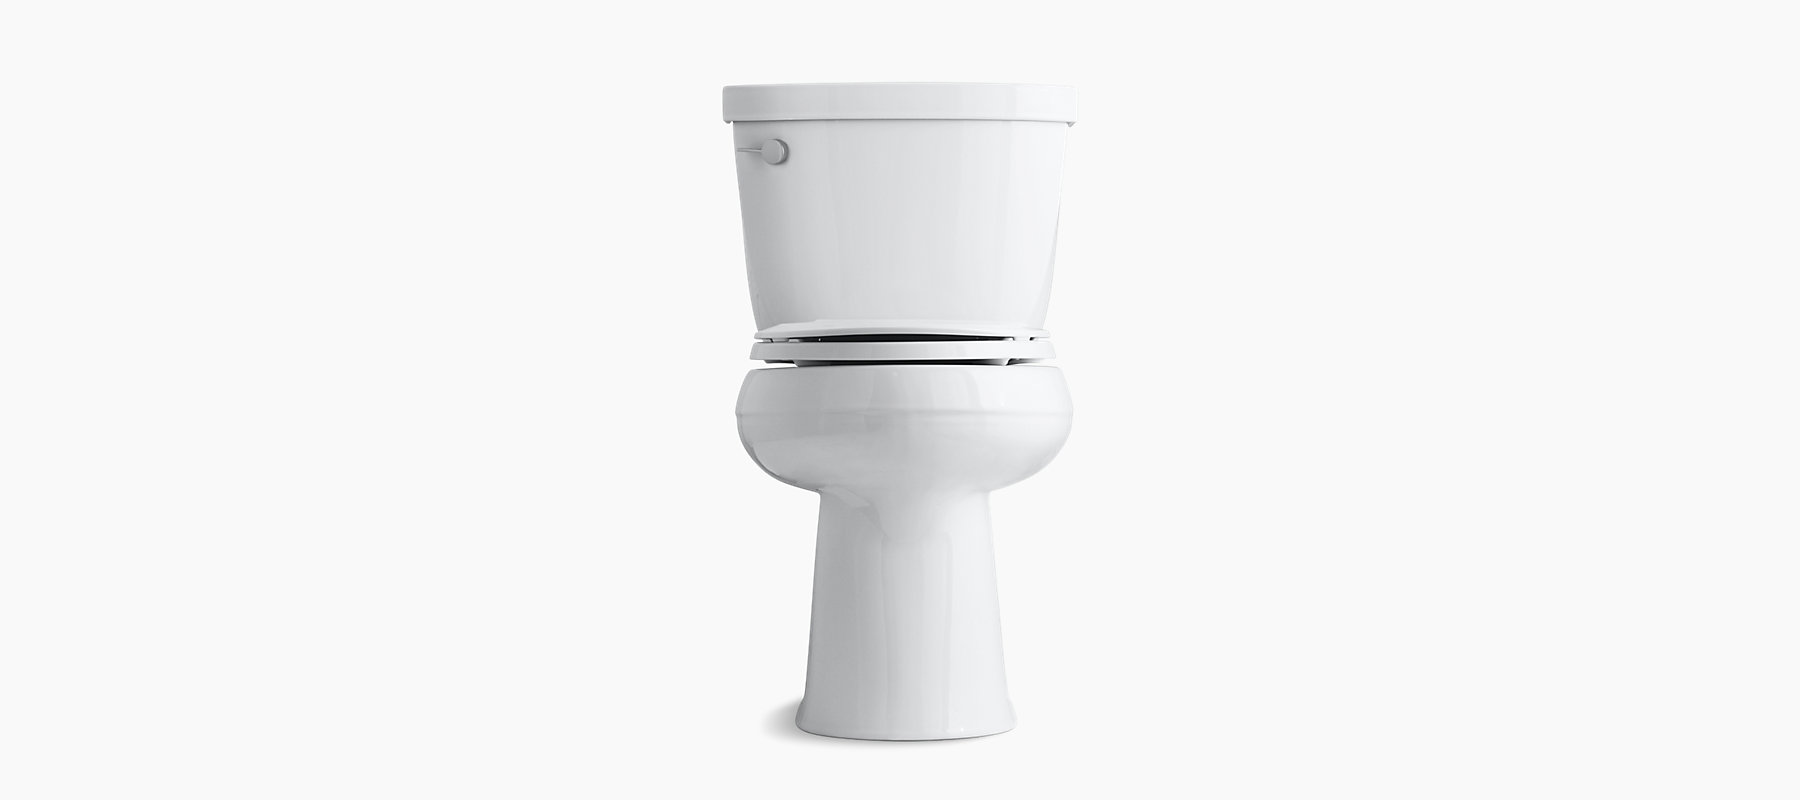 Kohler K-3851-0 Cimarron 10 Toilet with Leak-Proof Design